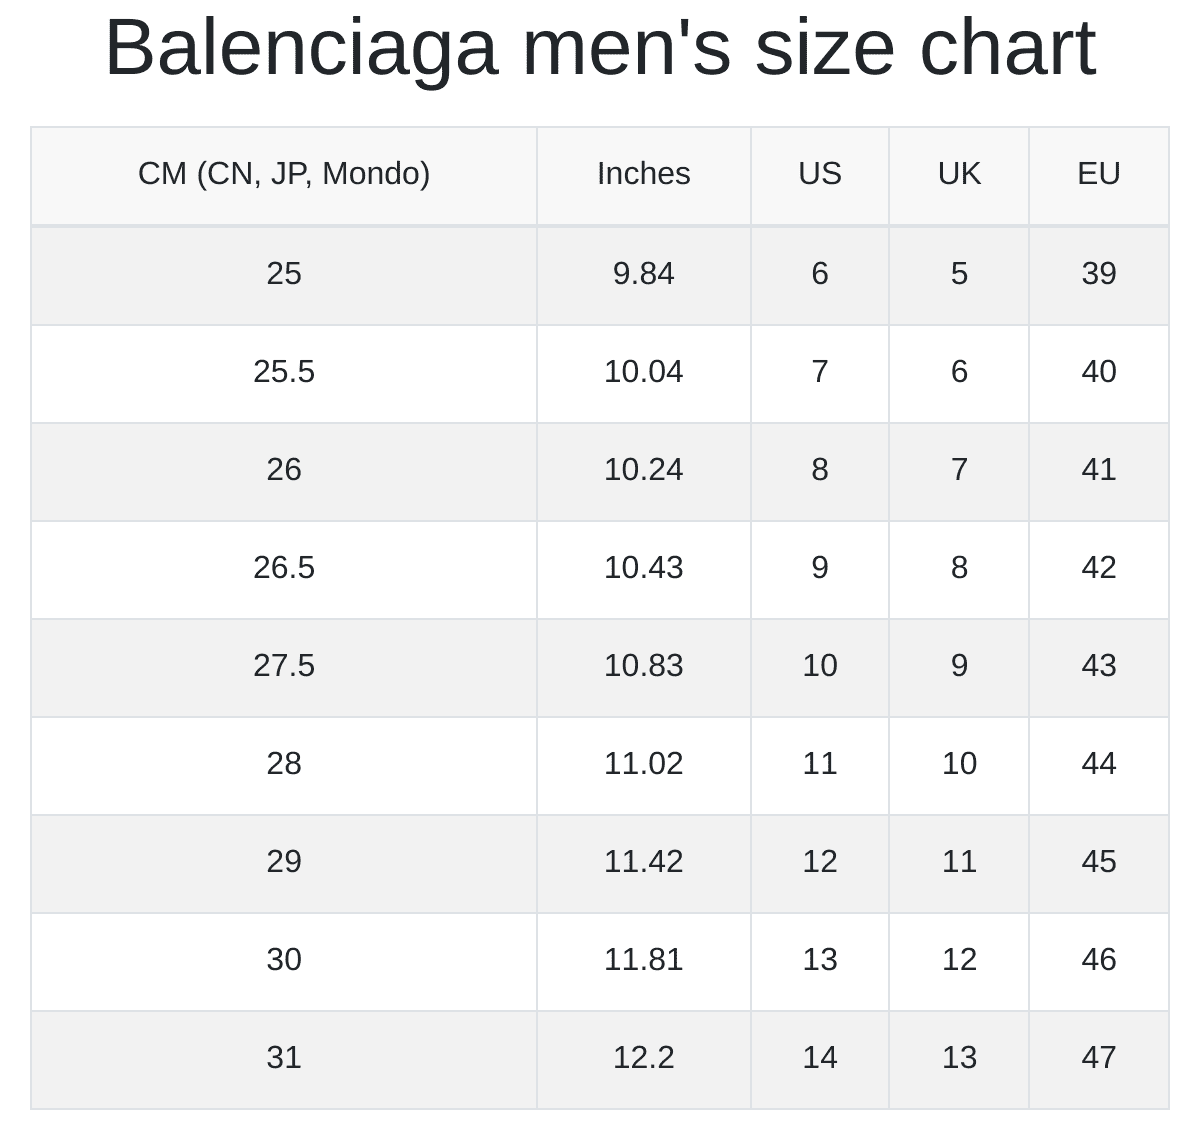 Balenciaga Men's and Women's Size Charts